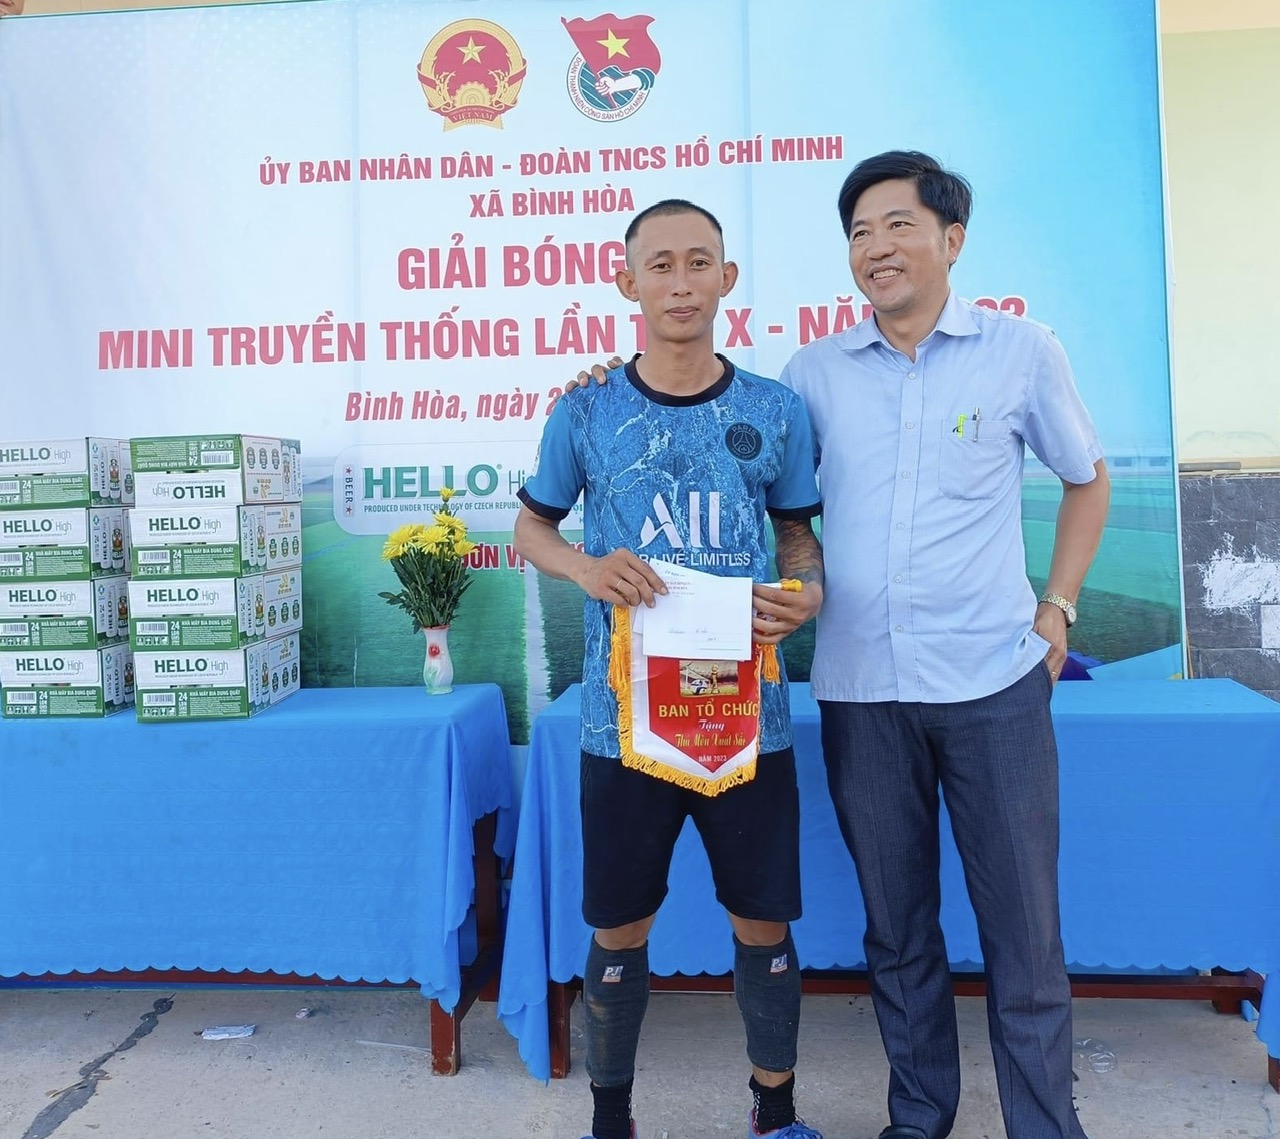 Thủ môn Nguyễn Văn Tuấn- đội bóng Chi đoàn thôn 3 nhận giải "thủ môn xuất sắc nhất"